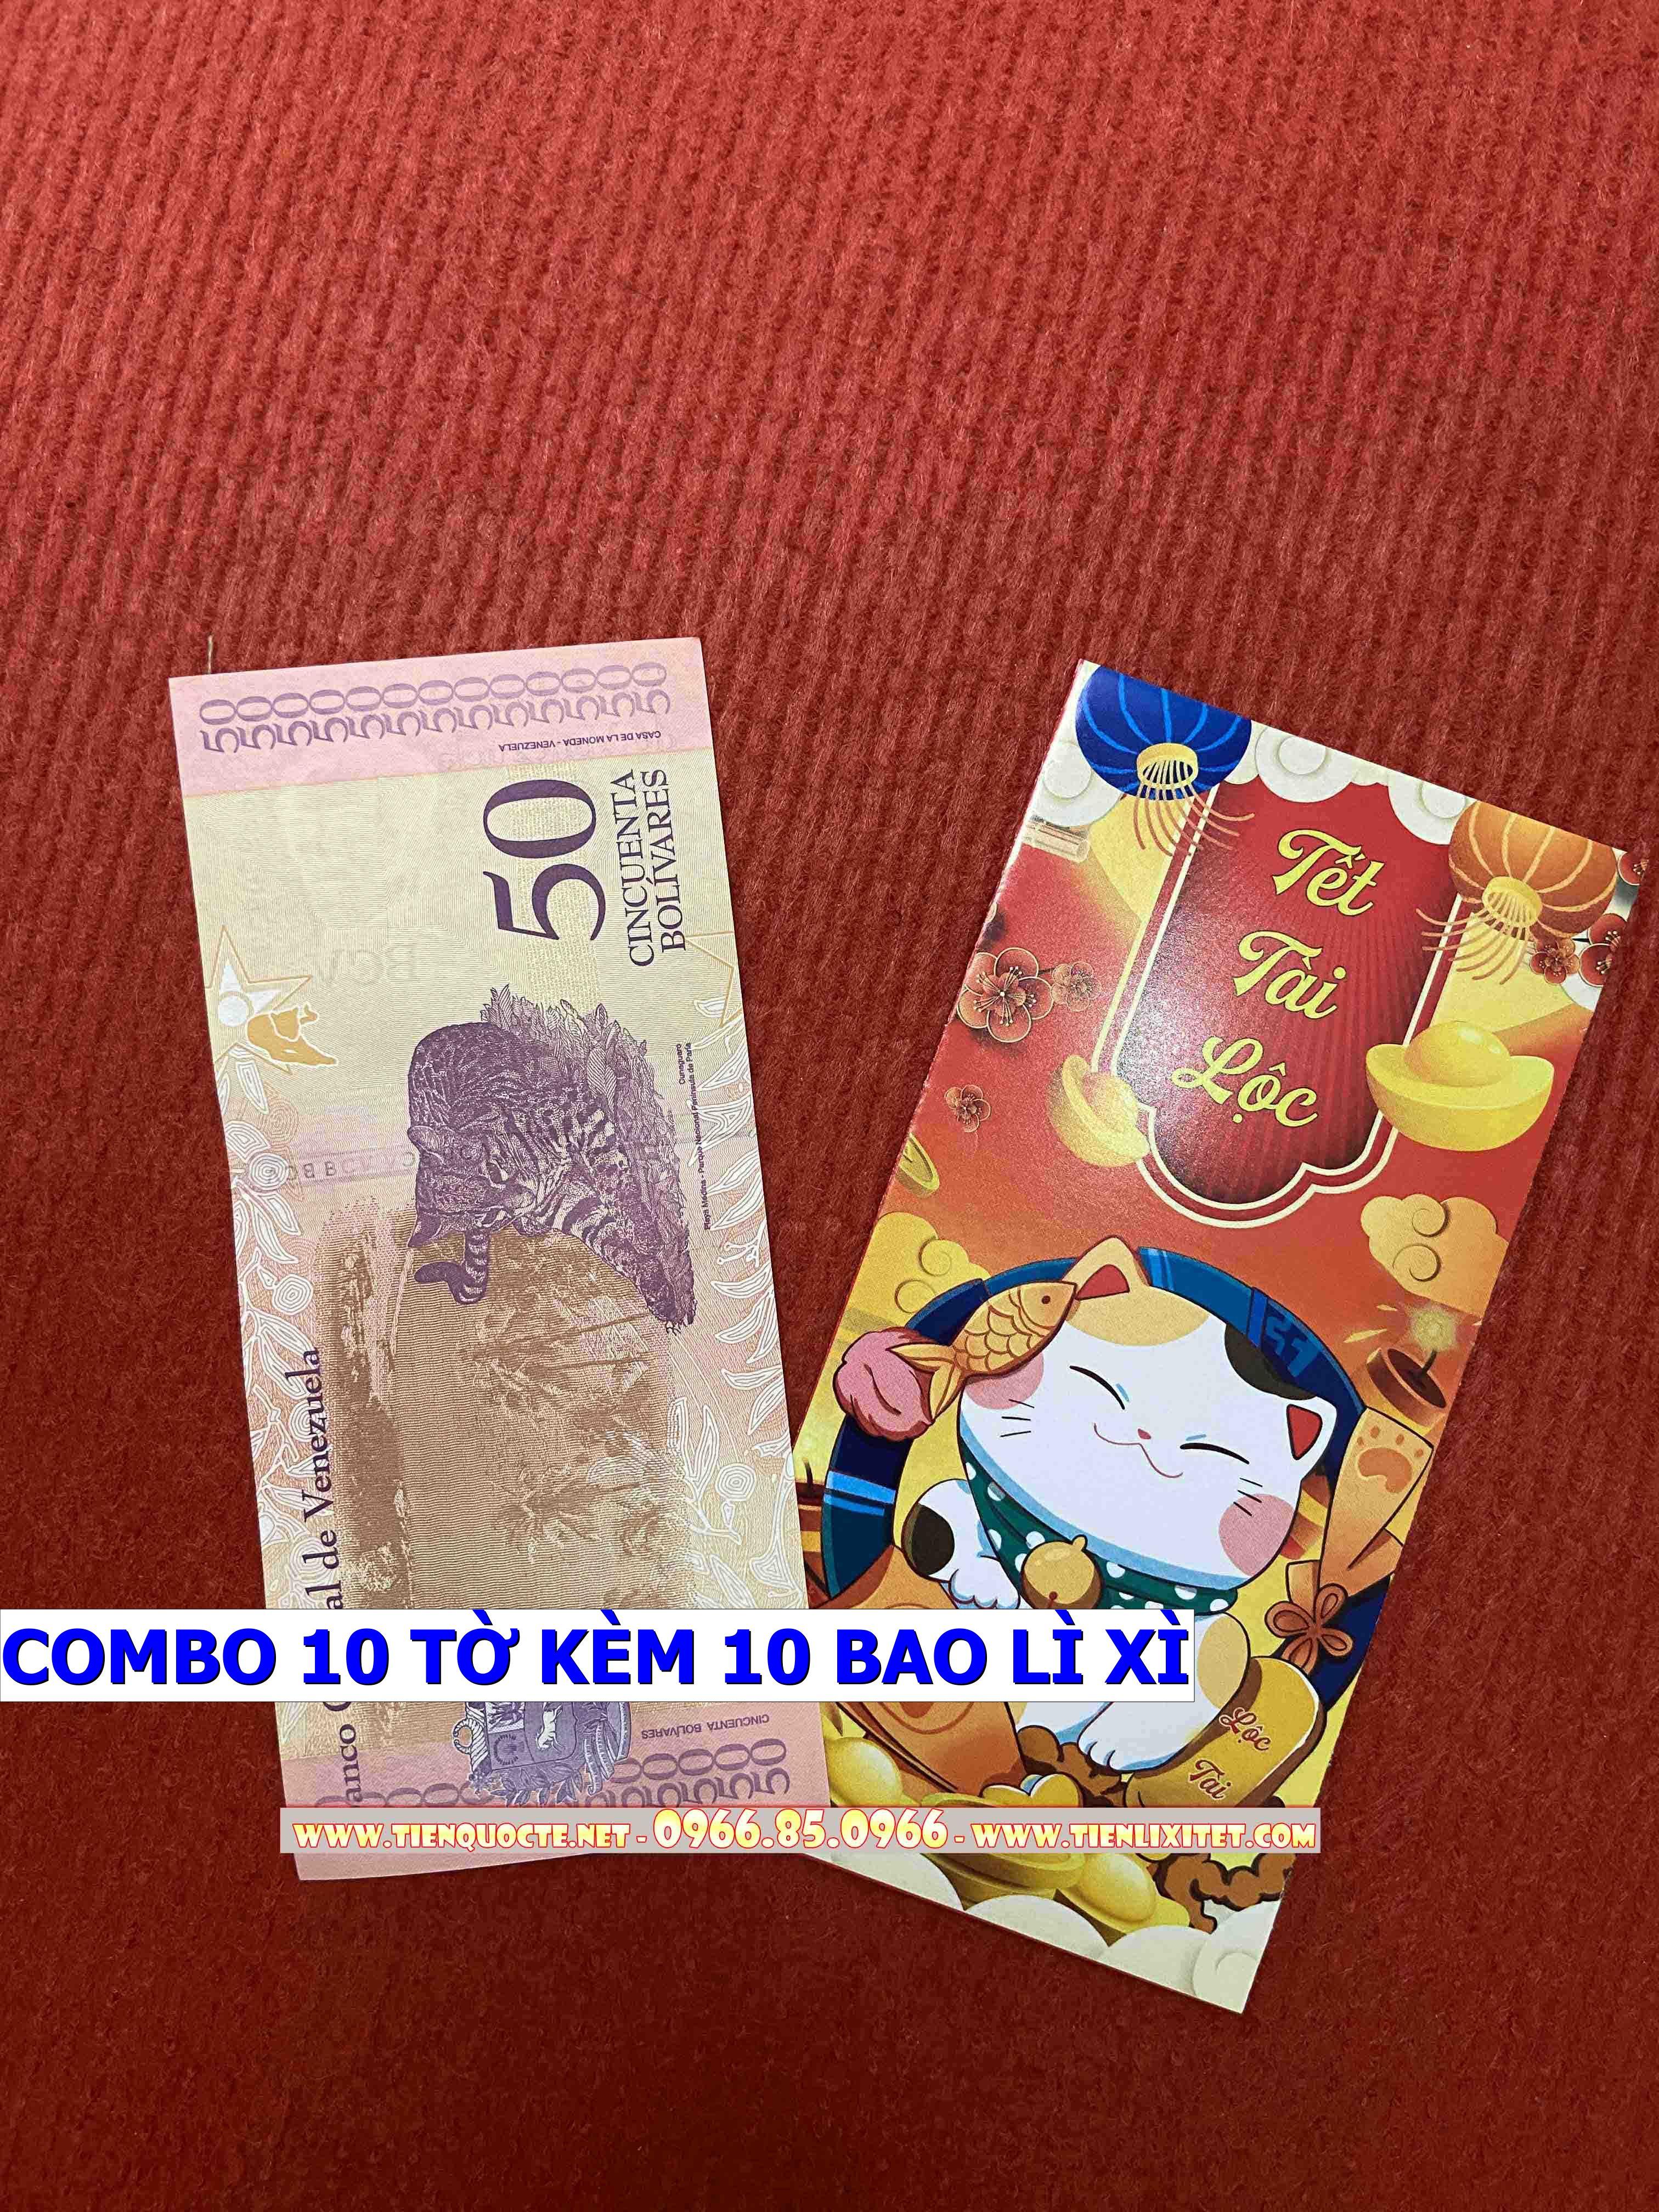 Set 10 tờ Lì xì hình tiền 2023 tấm tiền Venezuelaa hình con mèo 2023, tặng bao đỏ may mắn CPTLGD01857